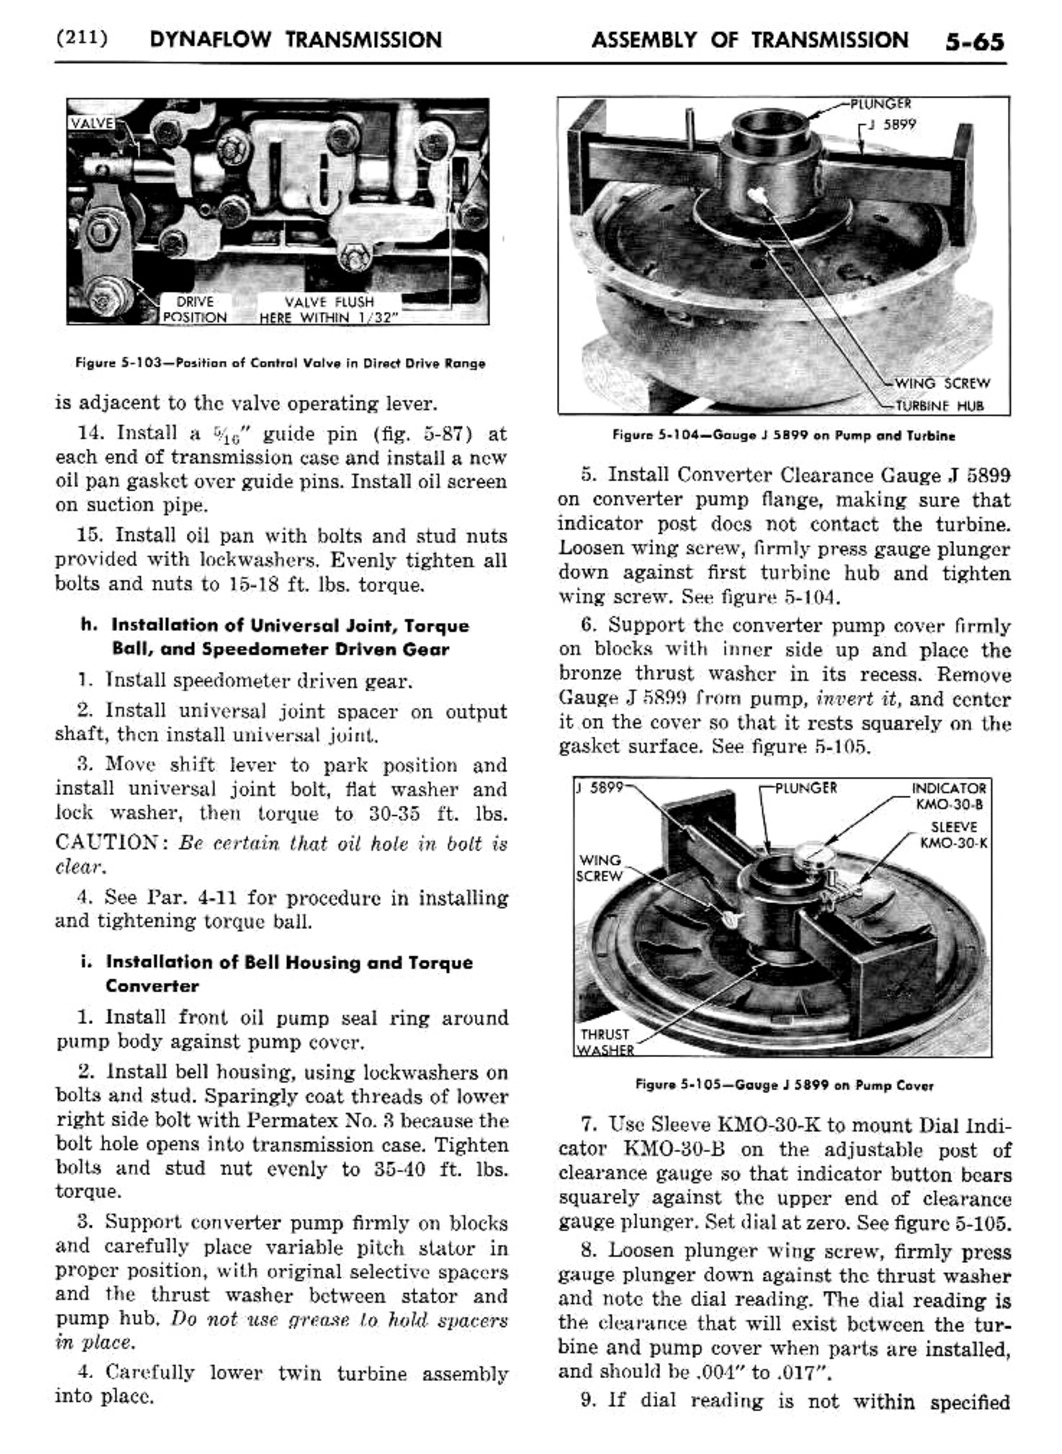 n_06 1956 Buick Shop Manual - Dynaflow-065-065.jpg